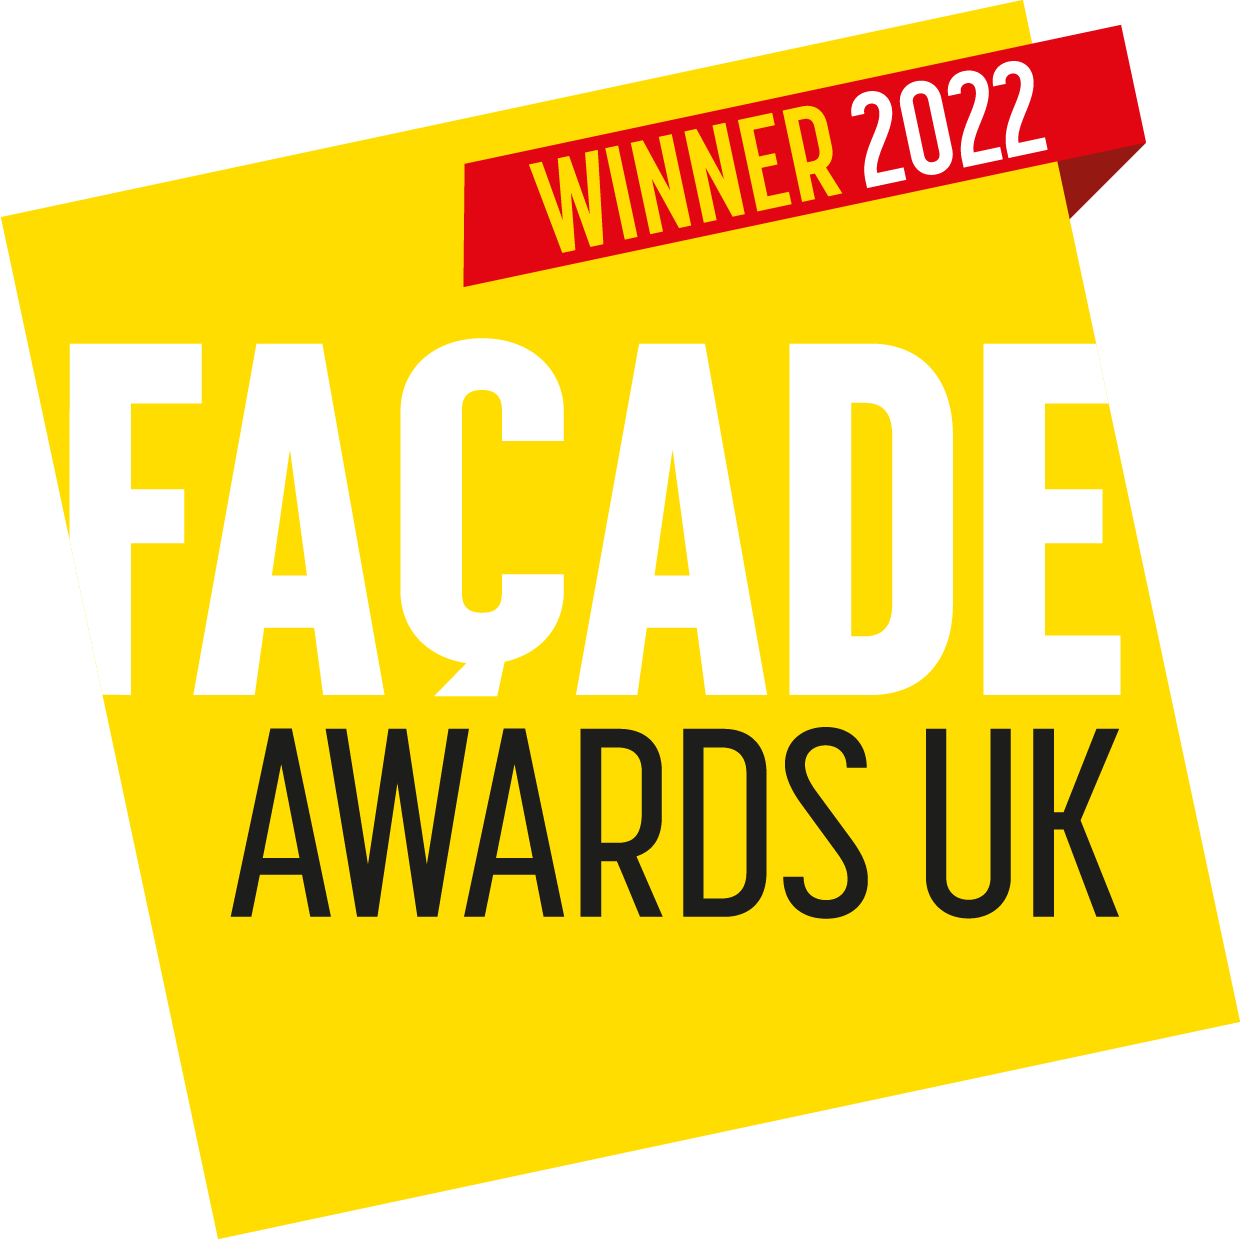 Facade Awards UK Winner